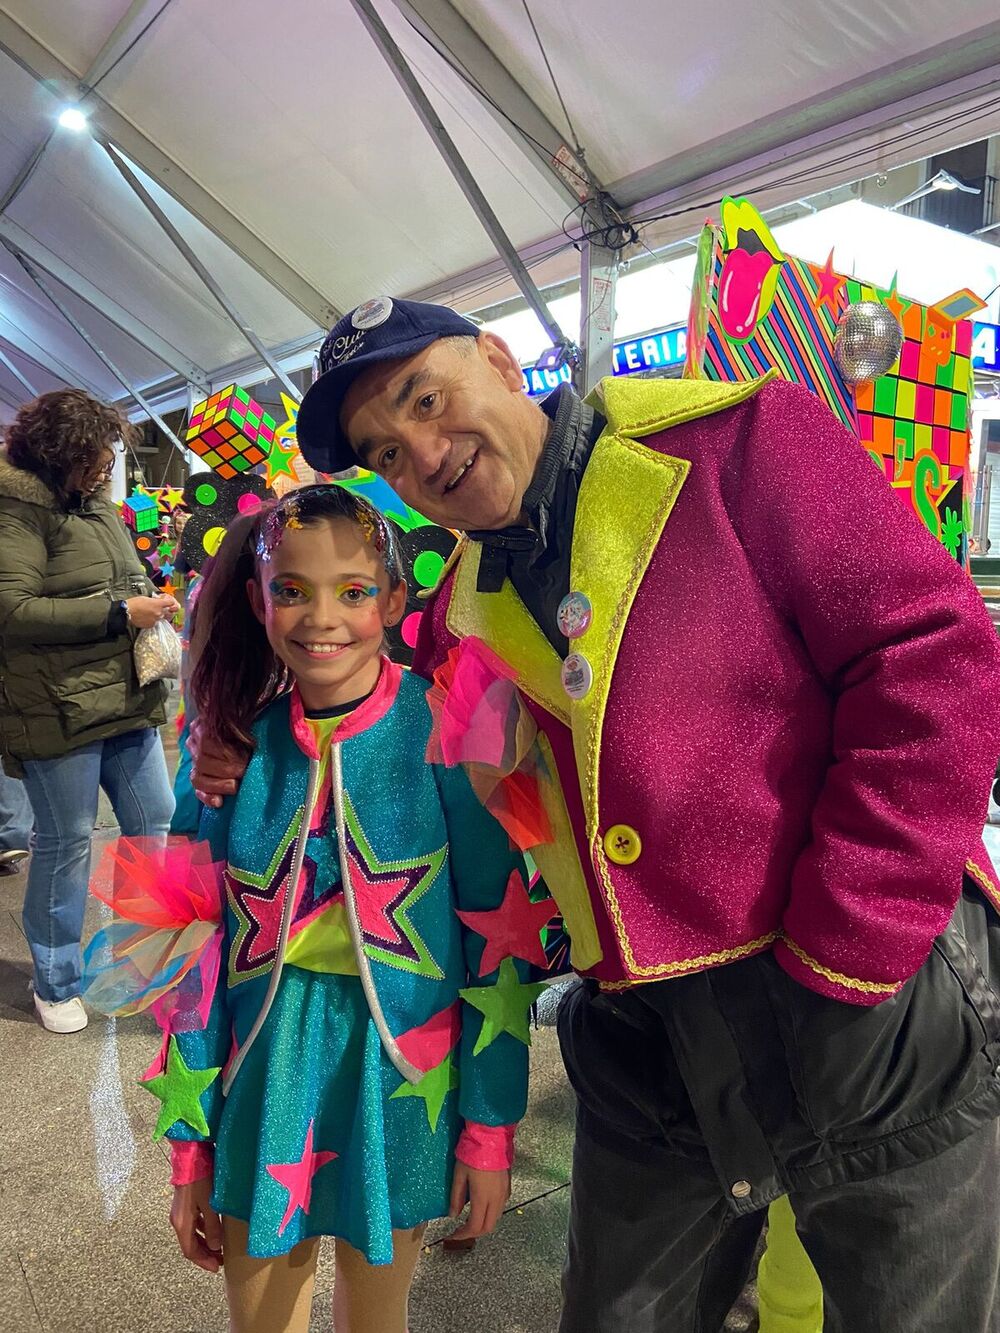 Las estrellas del Carnaval de Villarrobledo